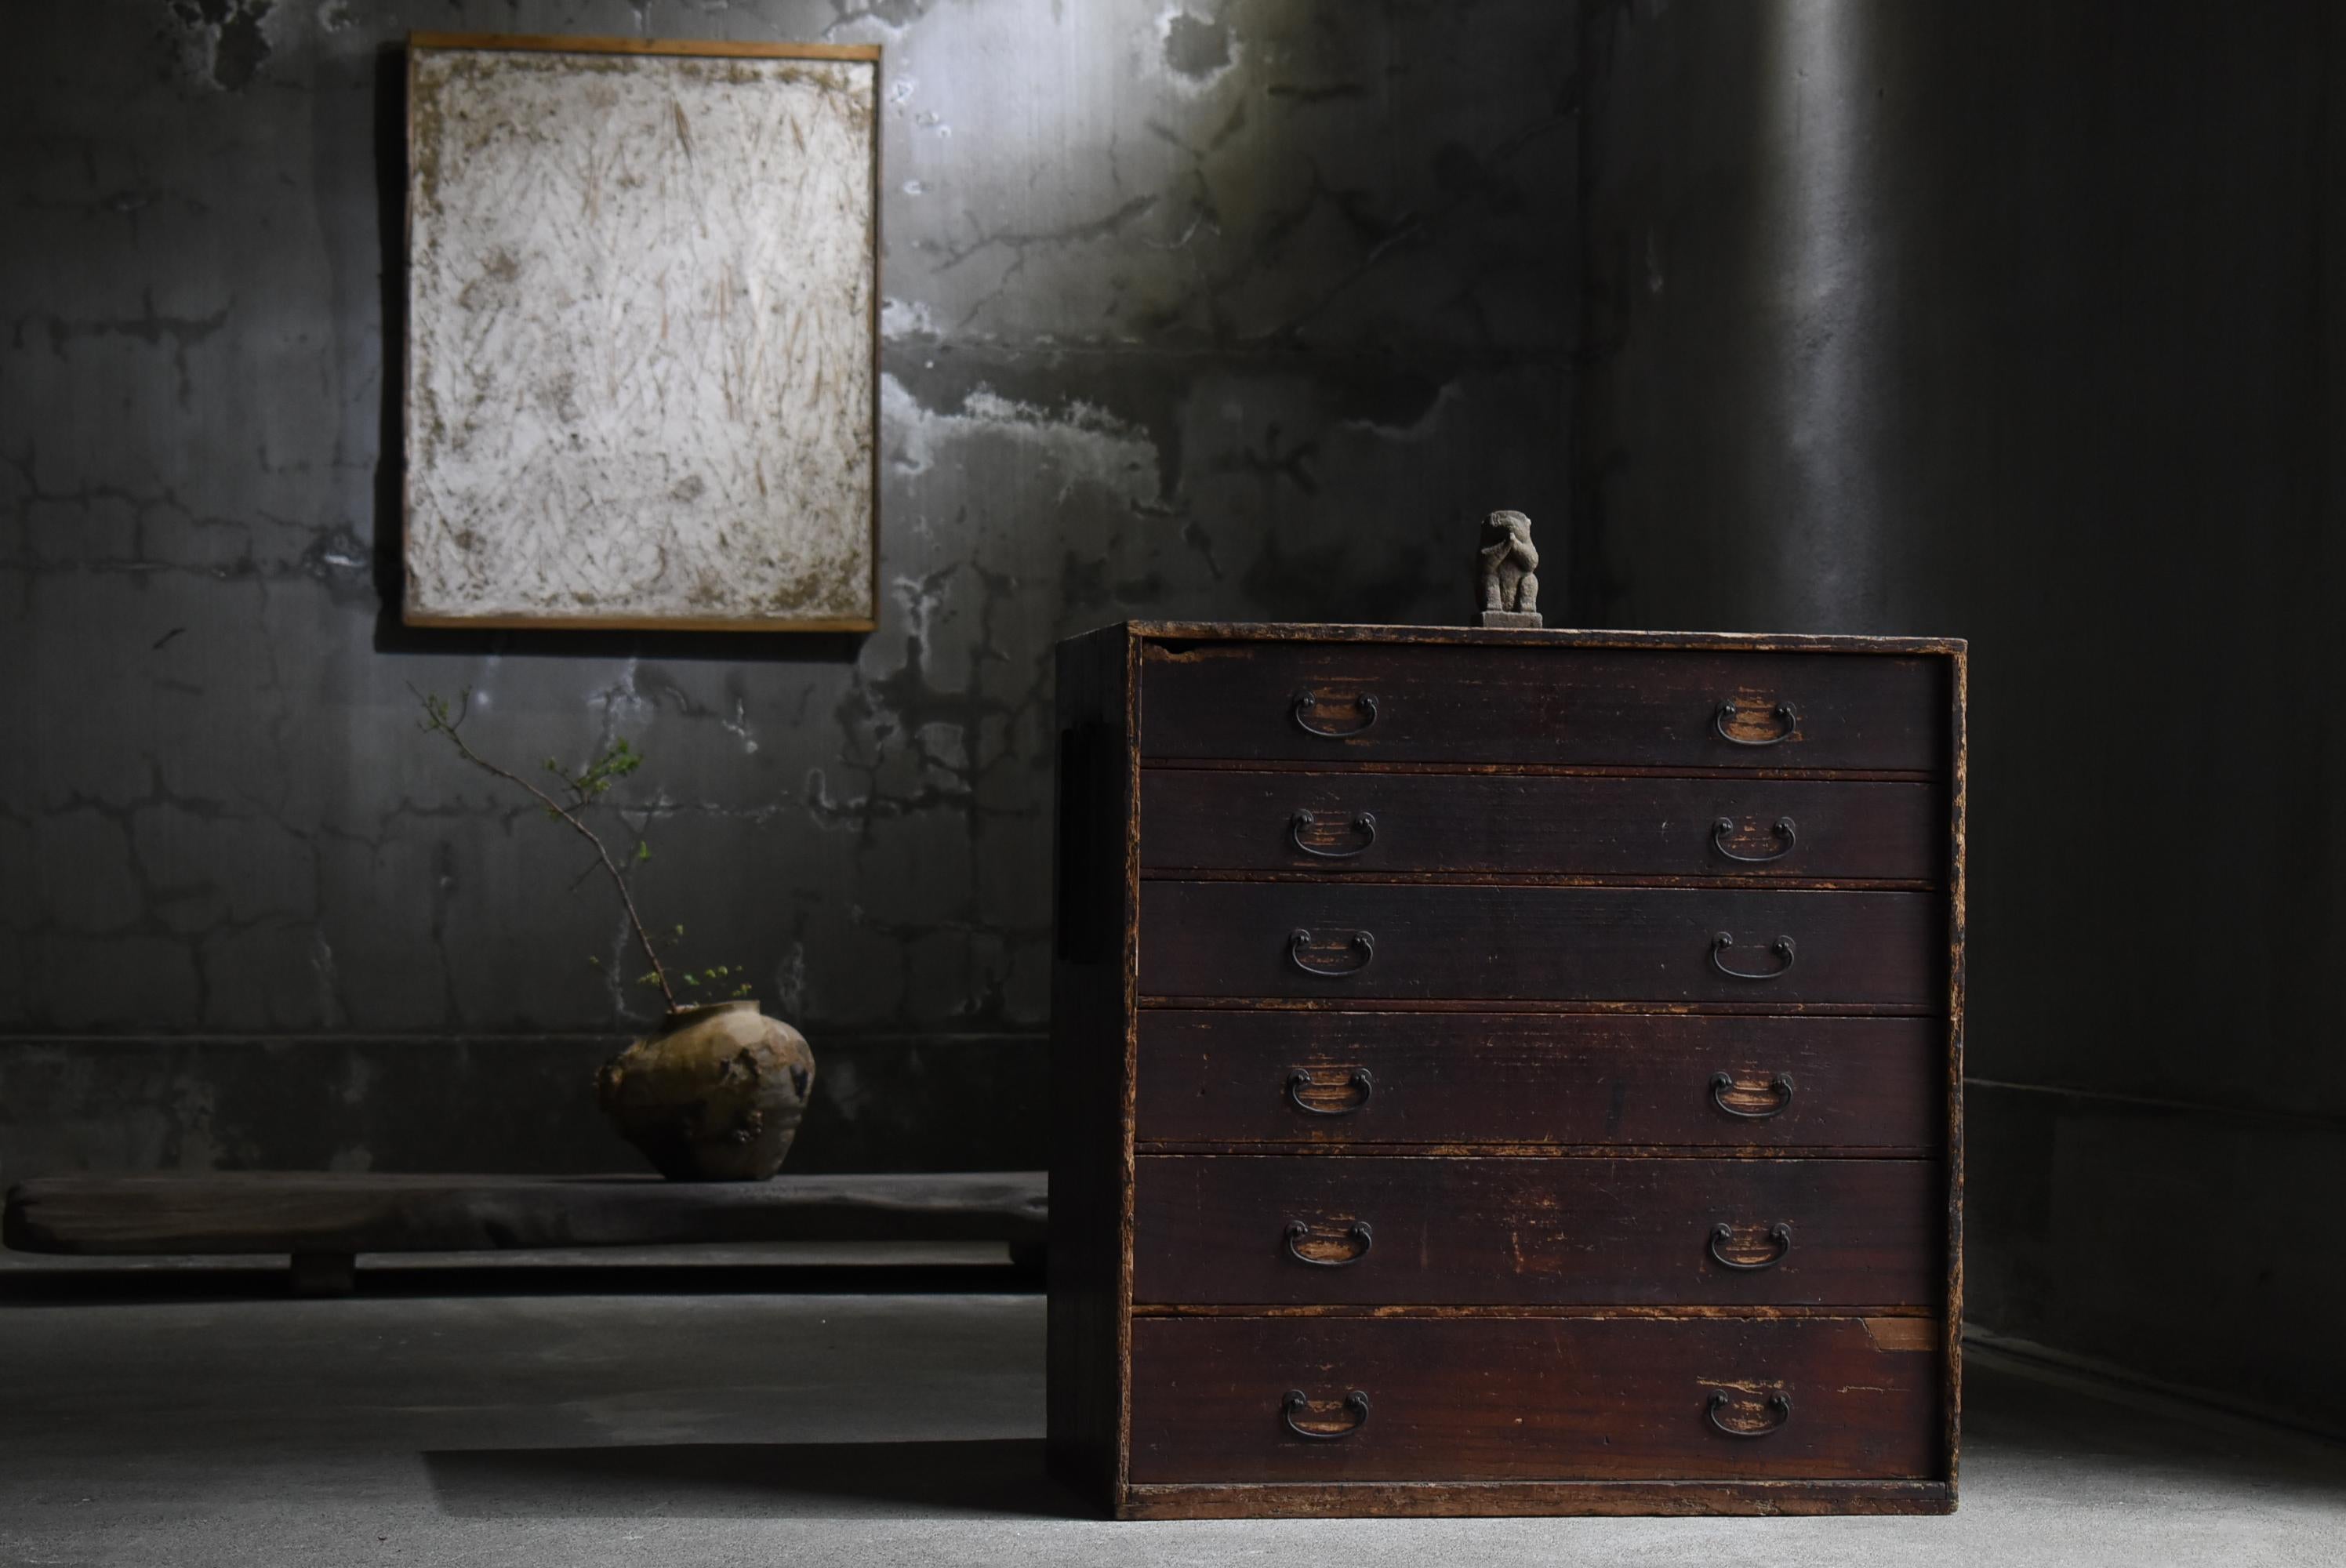 Très vieux tiroir japonais.
Le mobilier date de la période Meiji (1860-1900).
Il est fabriqué en bois de paulownia, un matériau de haute qualité.

Ces tiroirs sont rustiques, simples et beaux.
Il n'y a pas de déchets dans la conception.
C'est